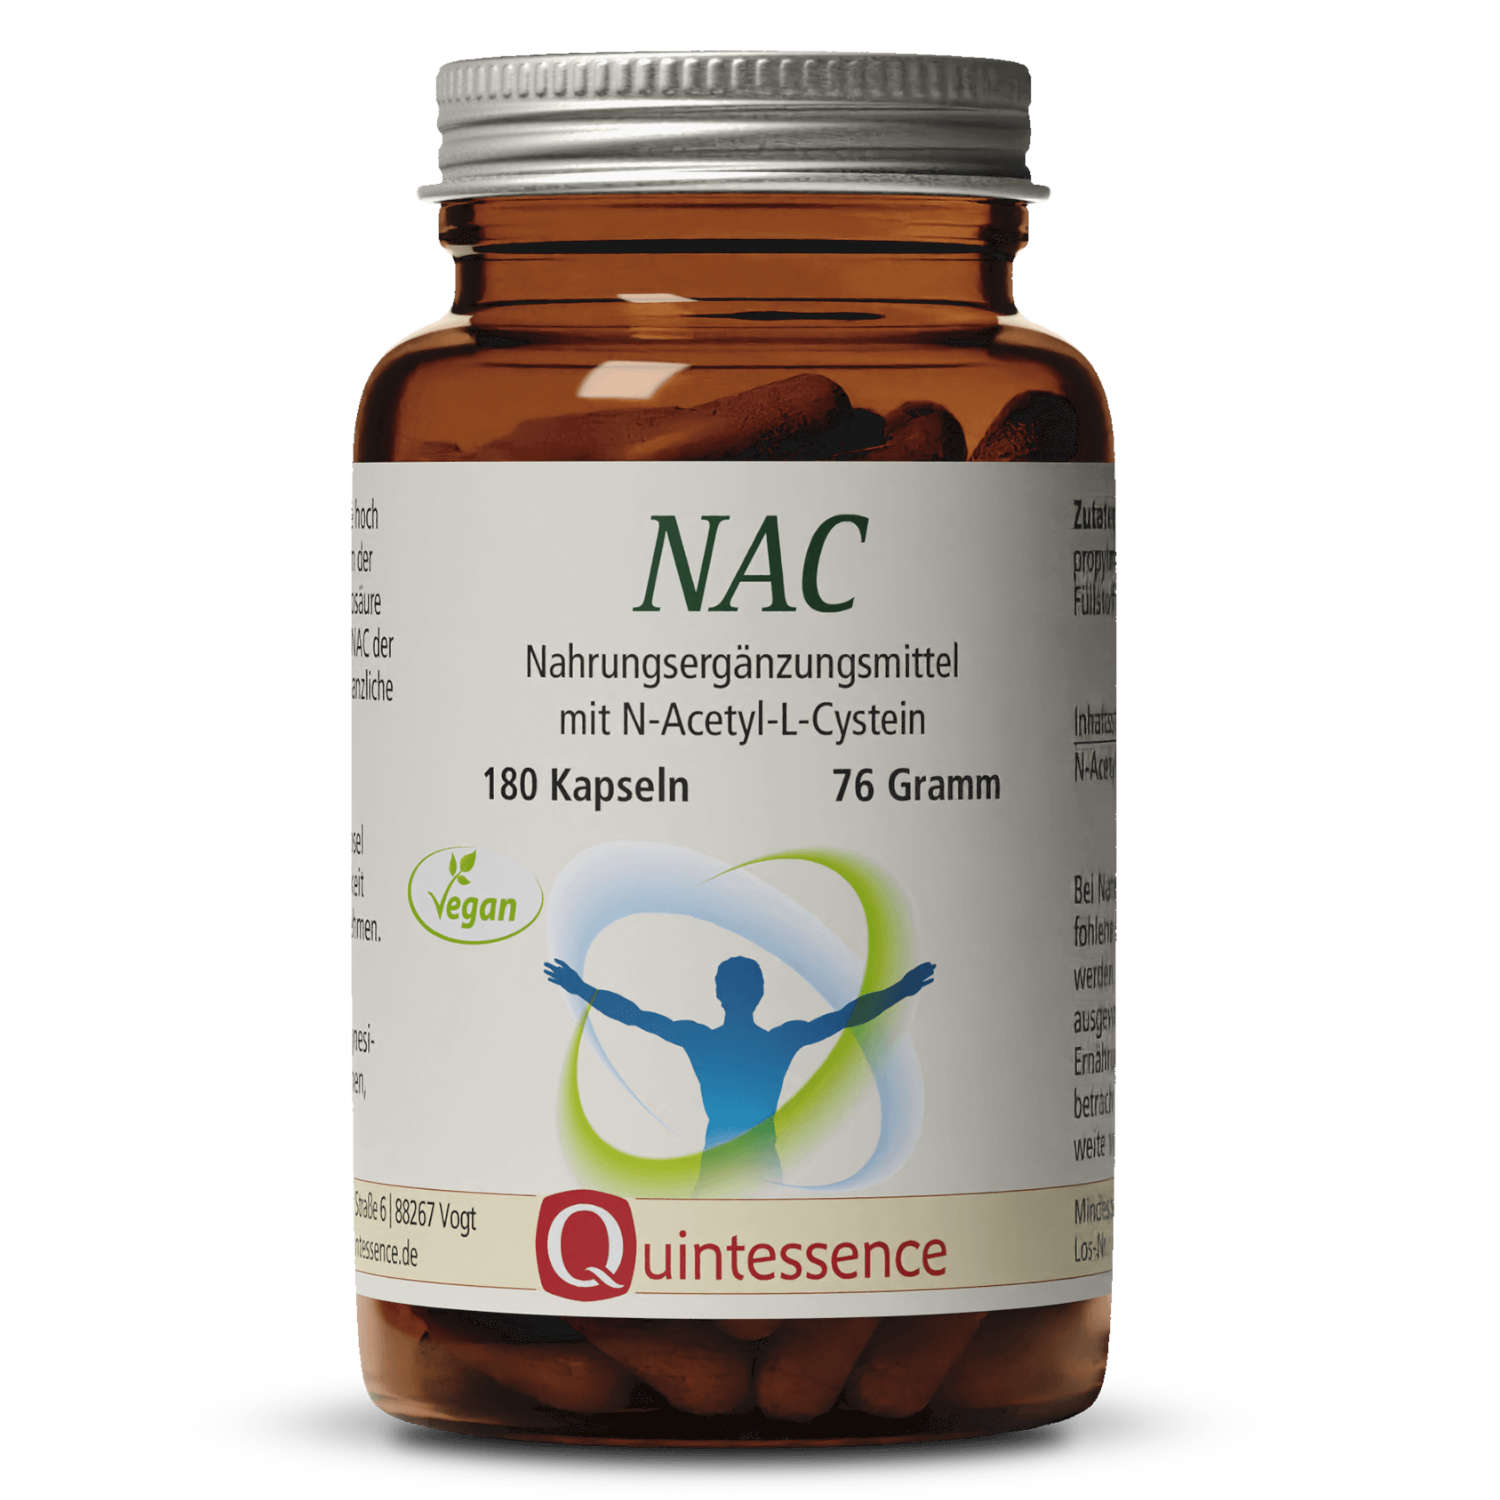 NAC N-Acetyl-L-Cystein von Quintessence - 180 Kapseln